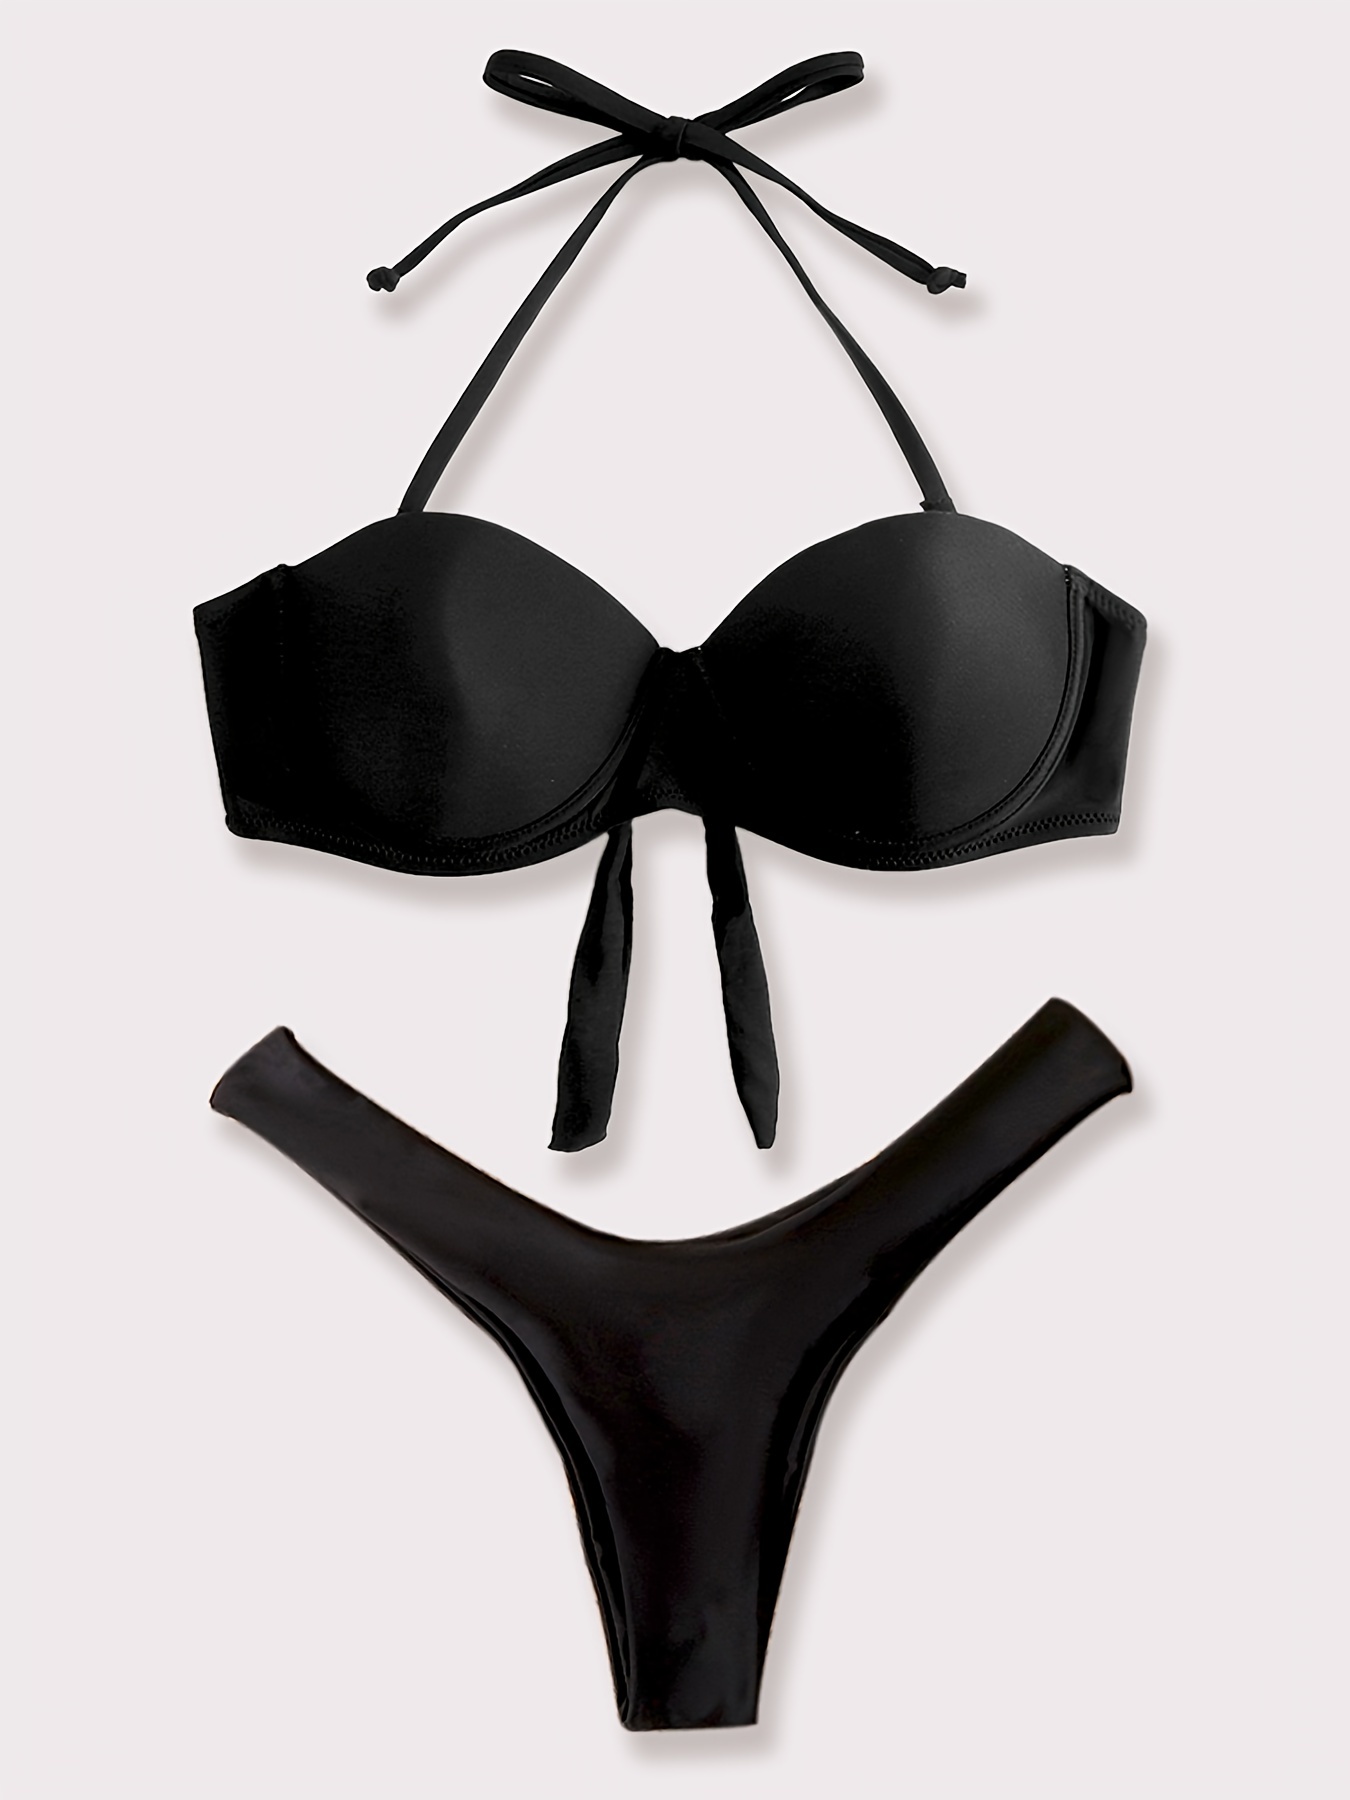  Anjikang Women's Spaghetti Straps Triangle Bikini Set Comfort  Push Up Padded Underwear Lace Up Bathing : Sports & Outdoors